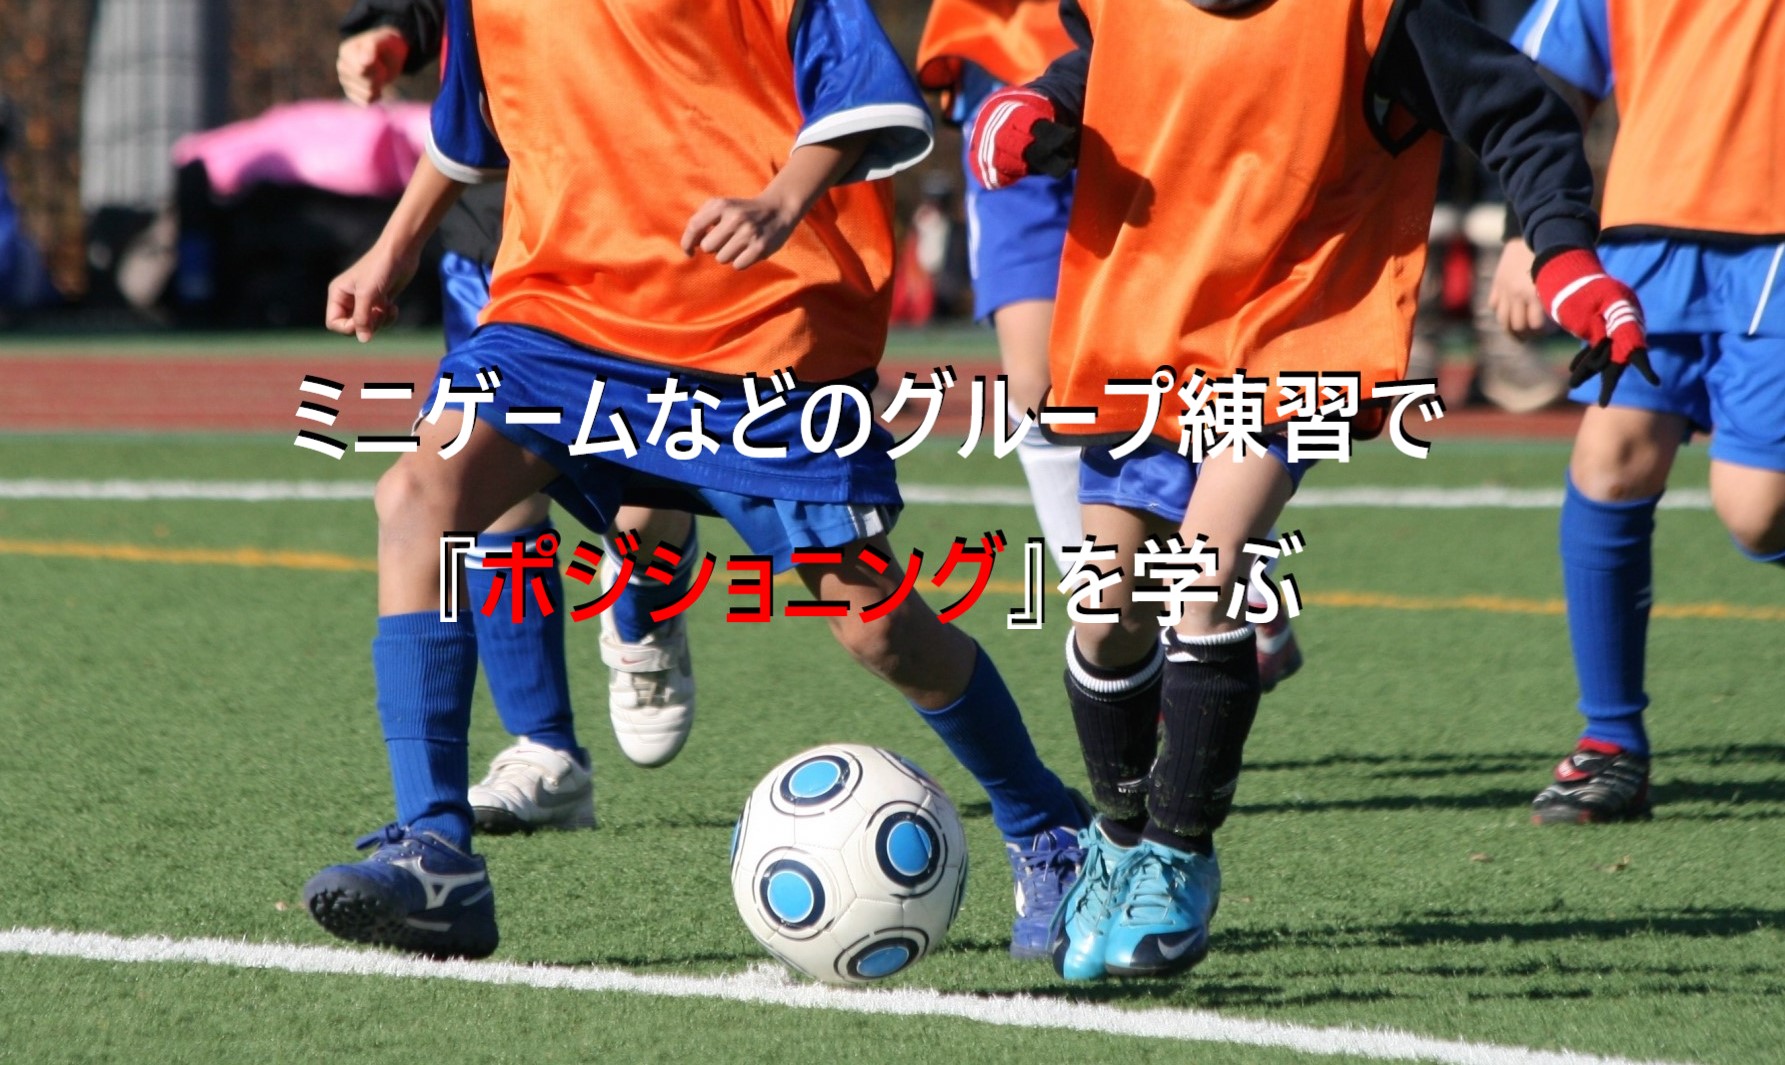 ミニゲームなどのグループ練習でポジショニングを学ぶ ジュニアサッカーの上達練習指導法